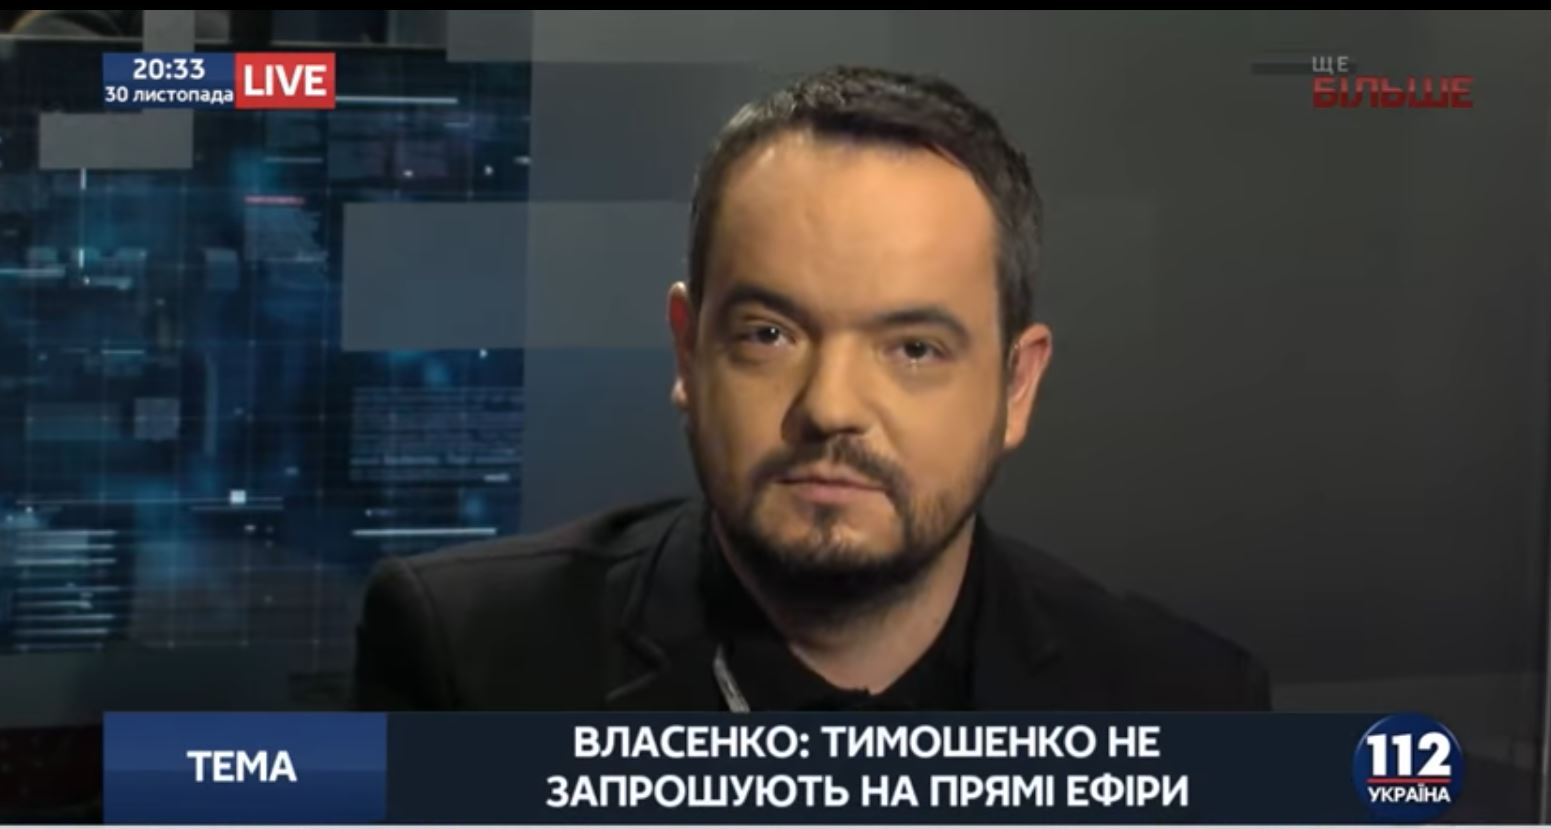 Сергей Власенко предложил обменять себя на Юлию Тимошенко